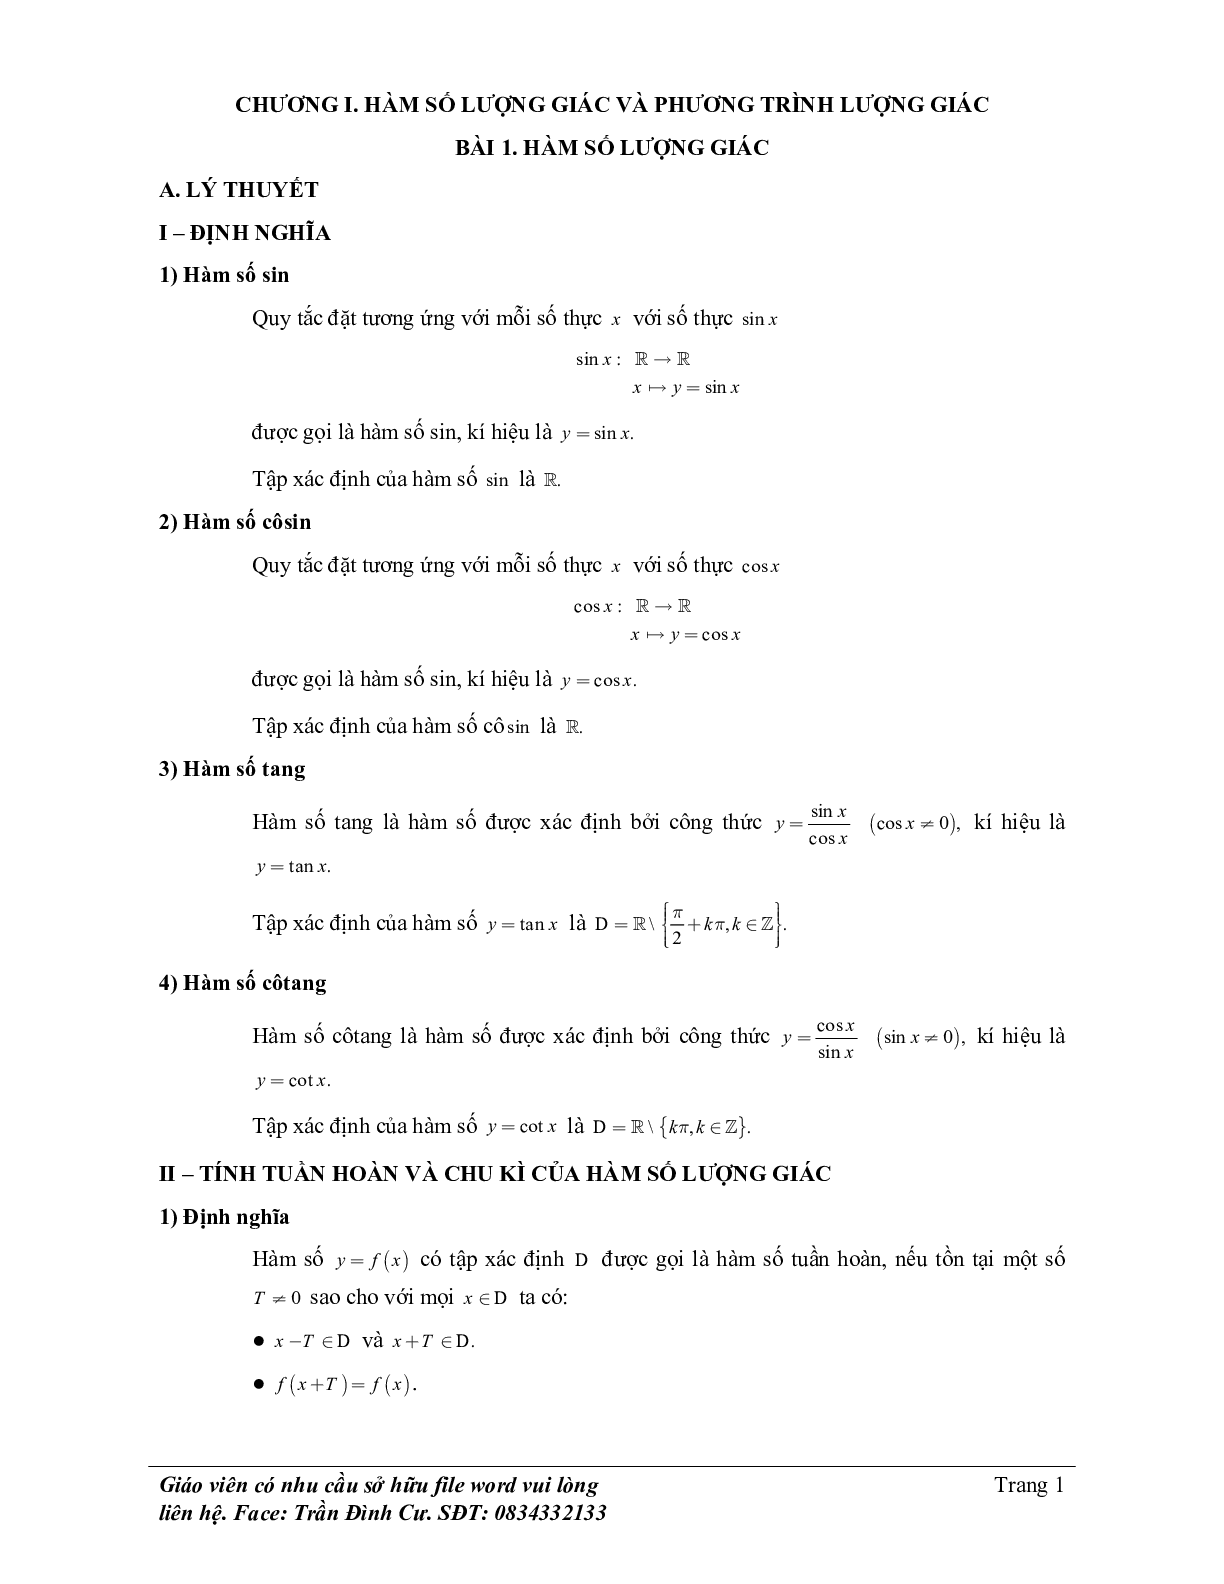 Phân loại và phương pháp giải bài tập hàm số lượng giác và phương trình lượng giác (trang 1)